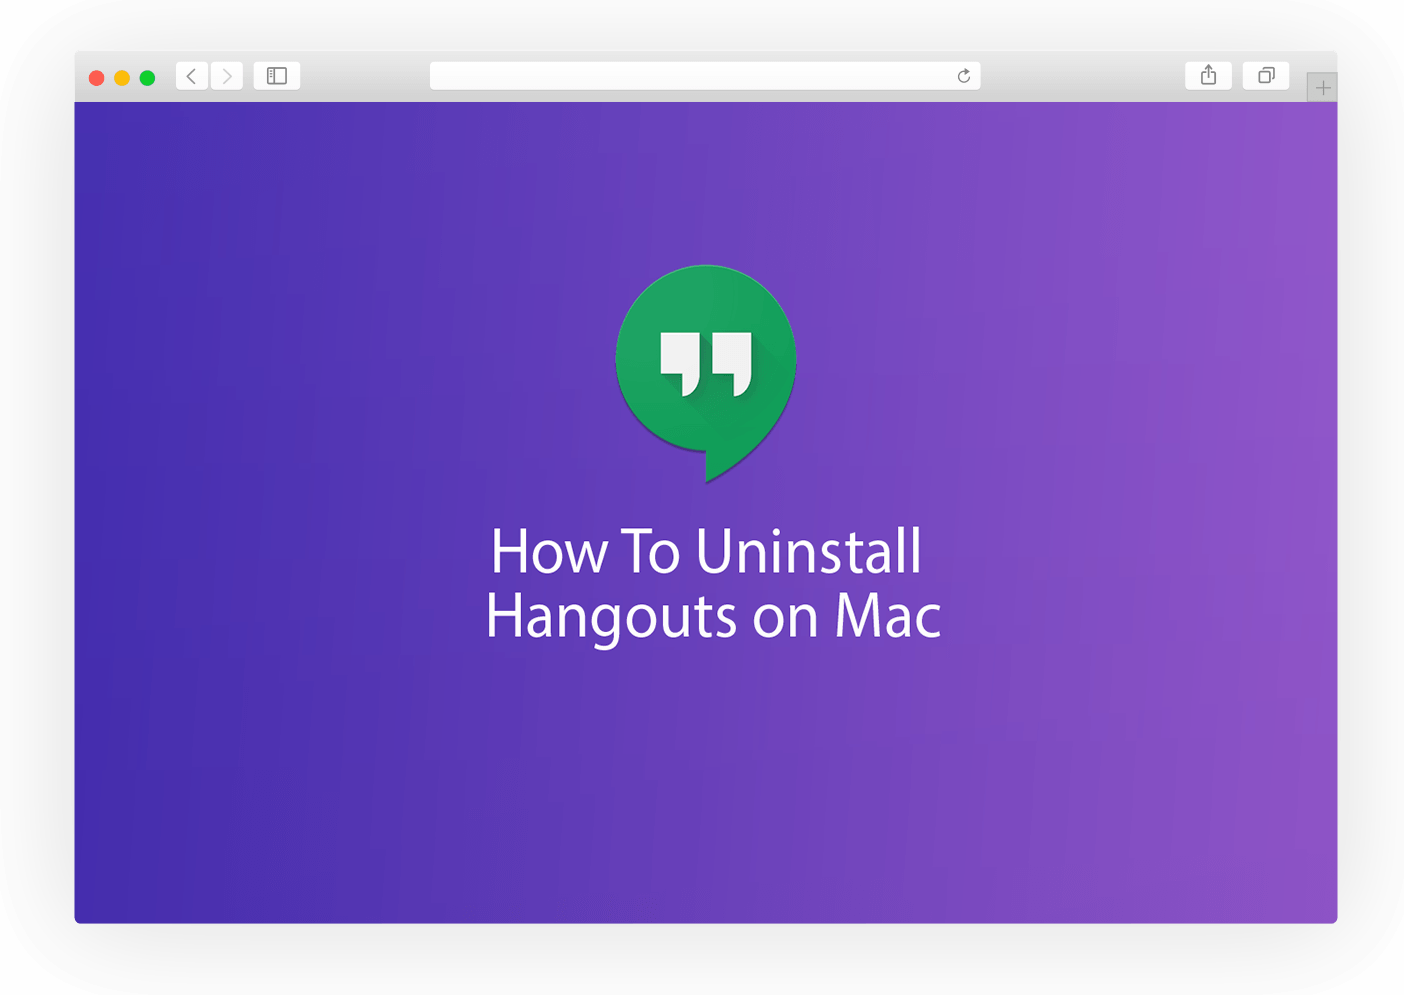 google hangouts for mac 10.4.11